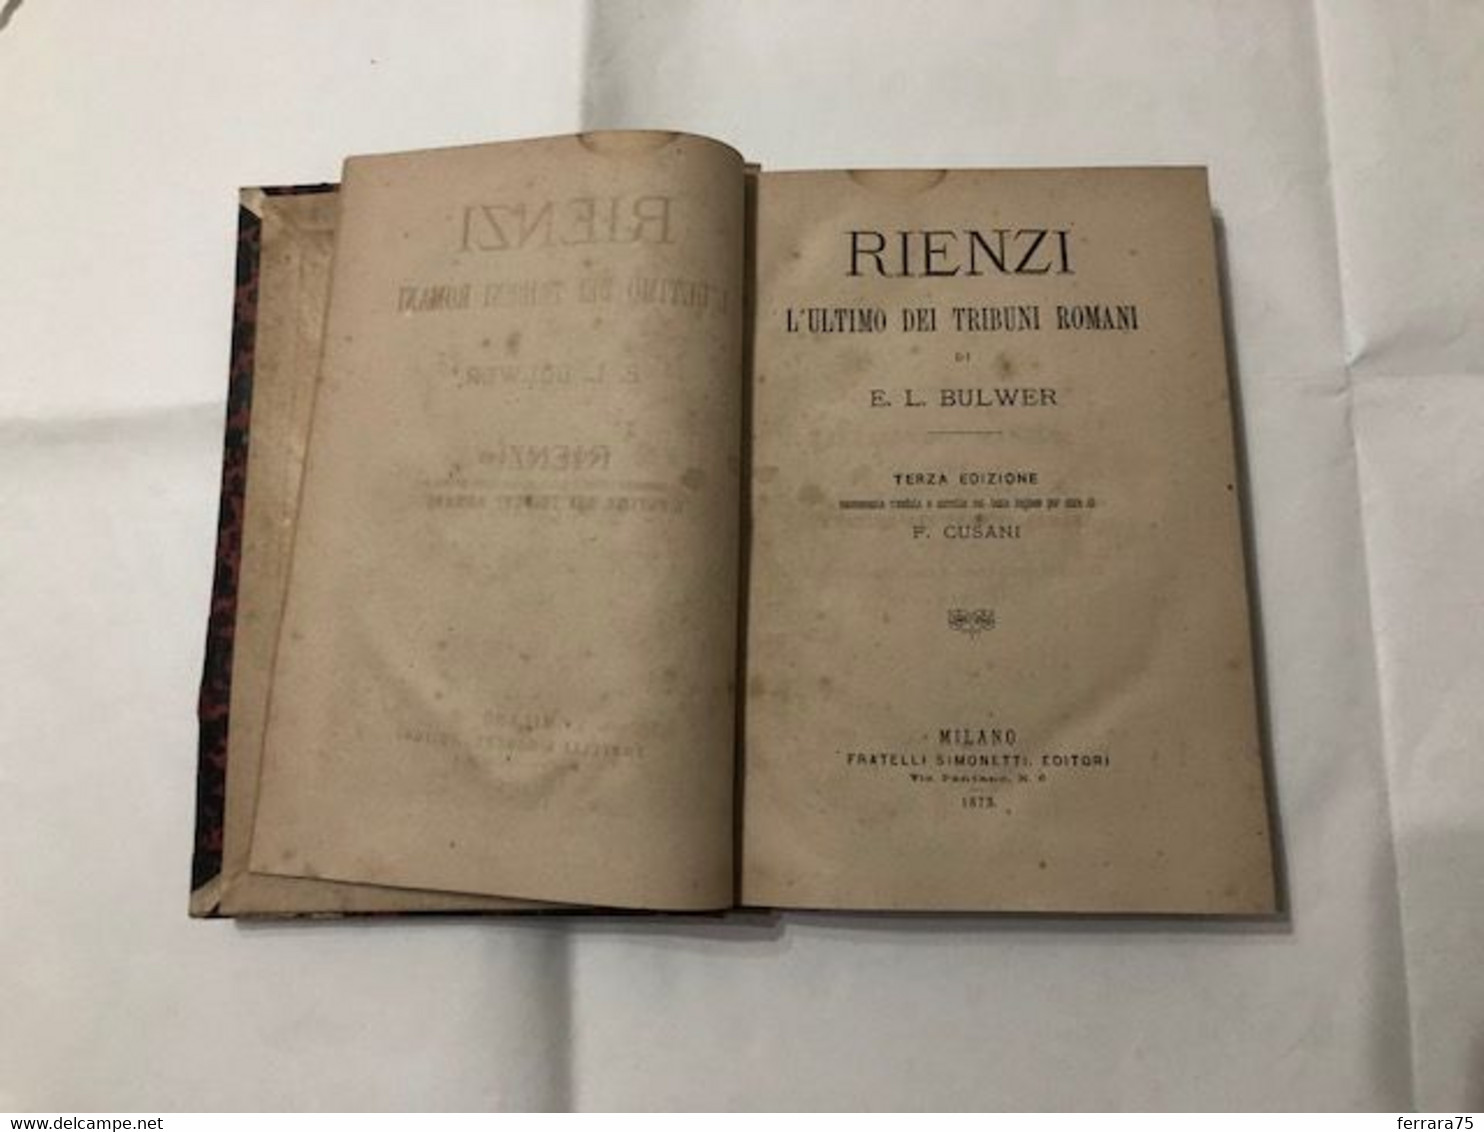 RIENZI L'ULTIMO DEI TRIBUNI ROMANI E.L.BULWER TERZA ED.1873. - Libri Antichi